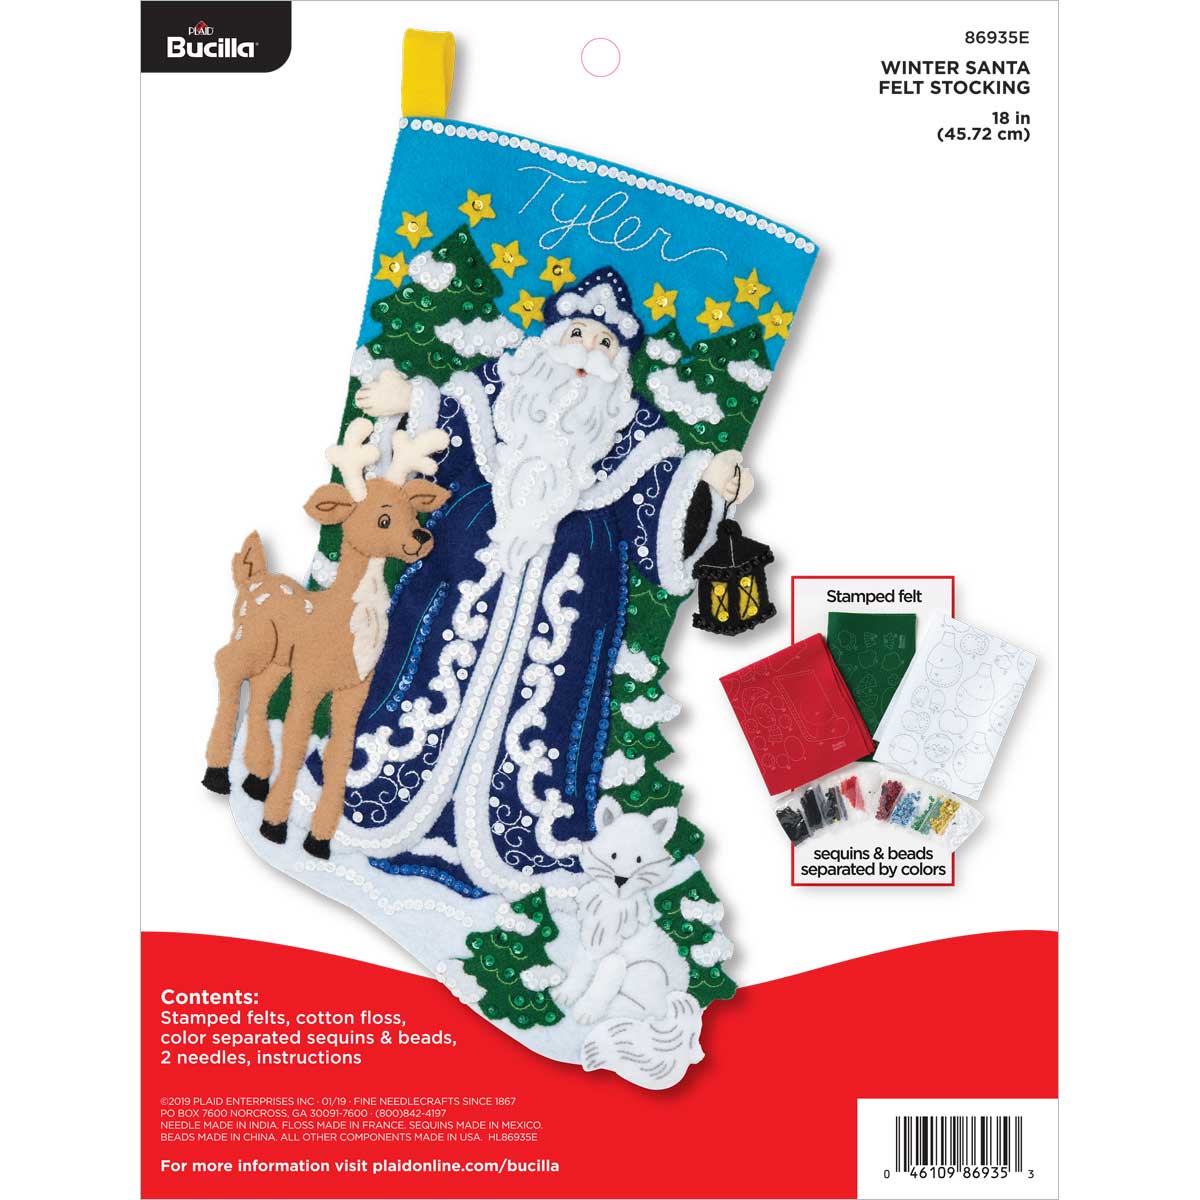 Christmas - Christmas Stocking Kits 